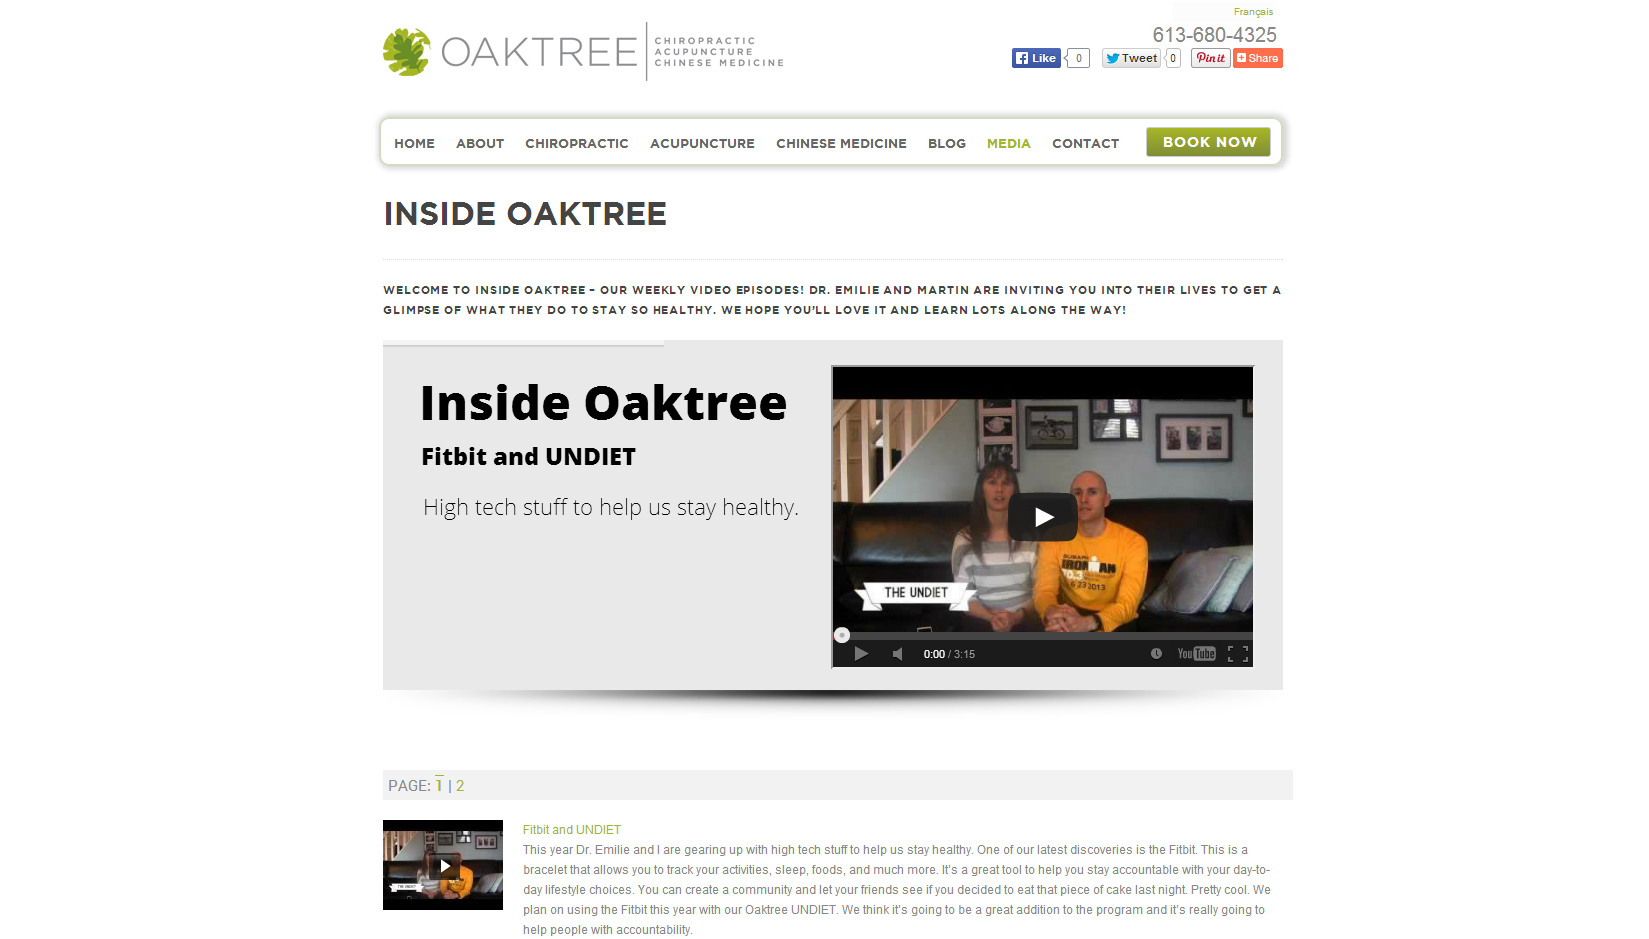 Oaktree